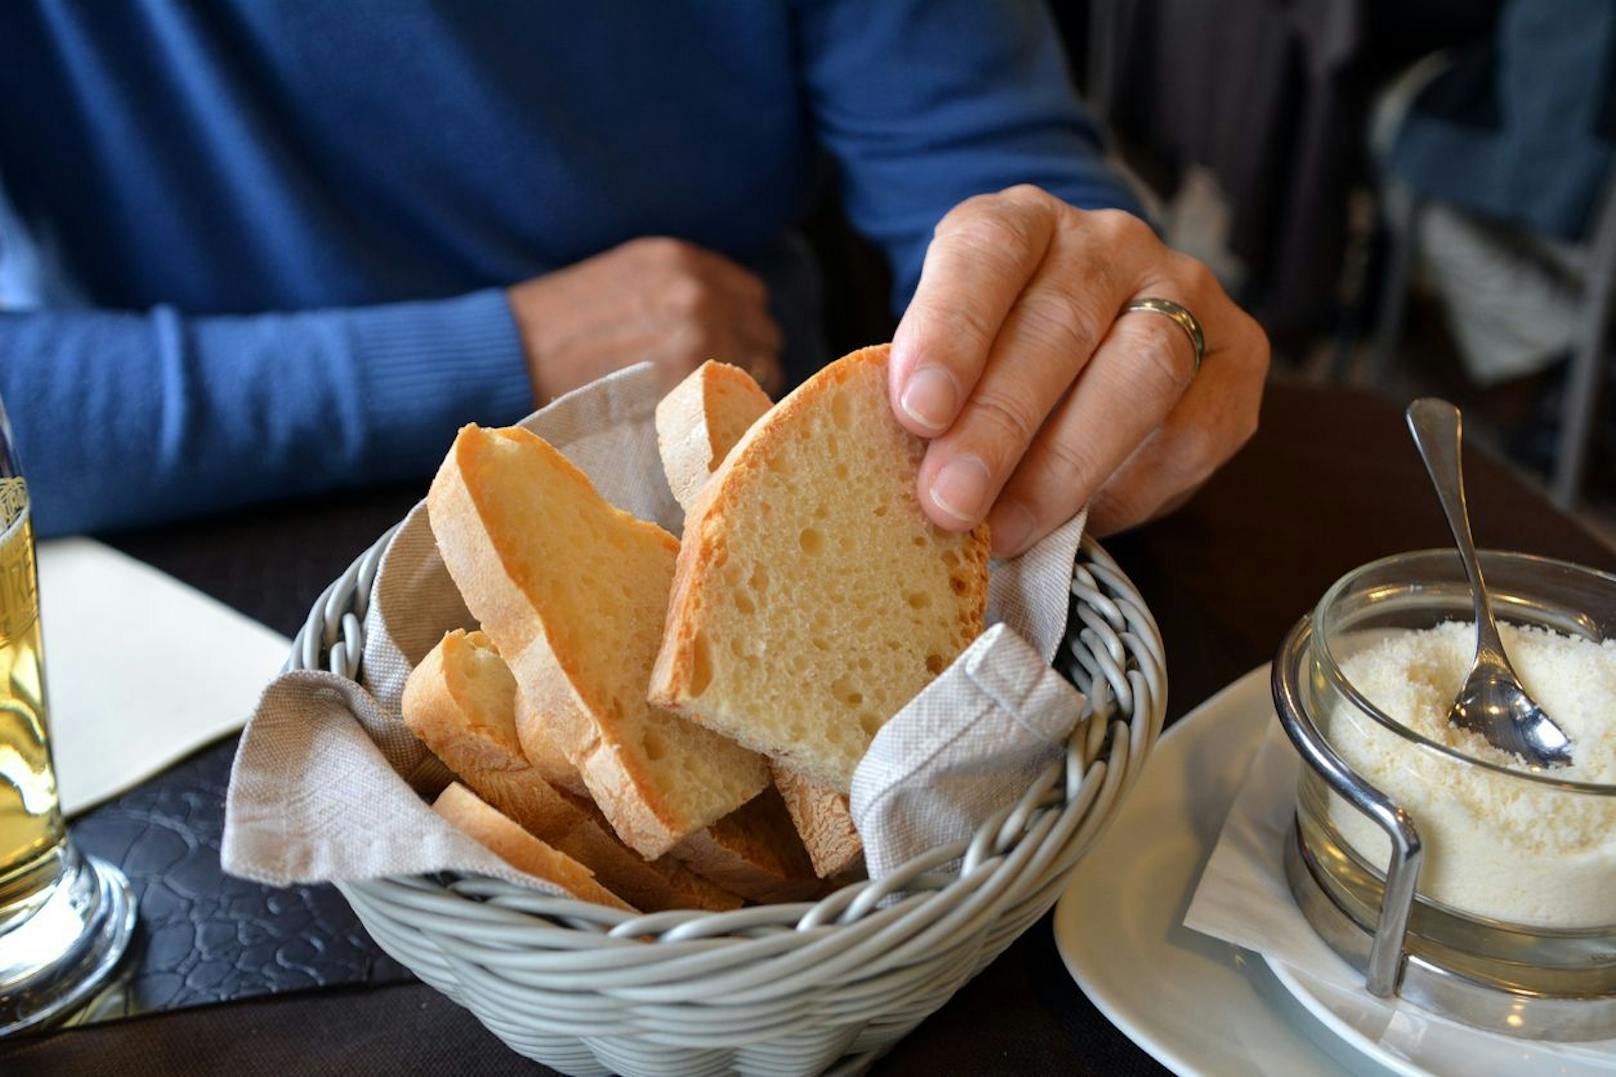 Wichtige Lebensmittel wie Brot werden immer teurer, das trifft auch viele Gastro-Betriebe.